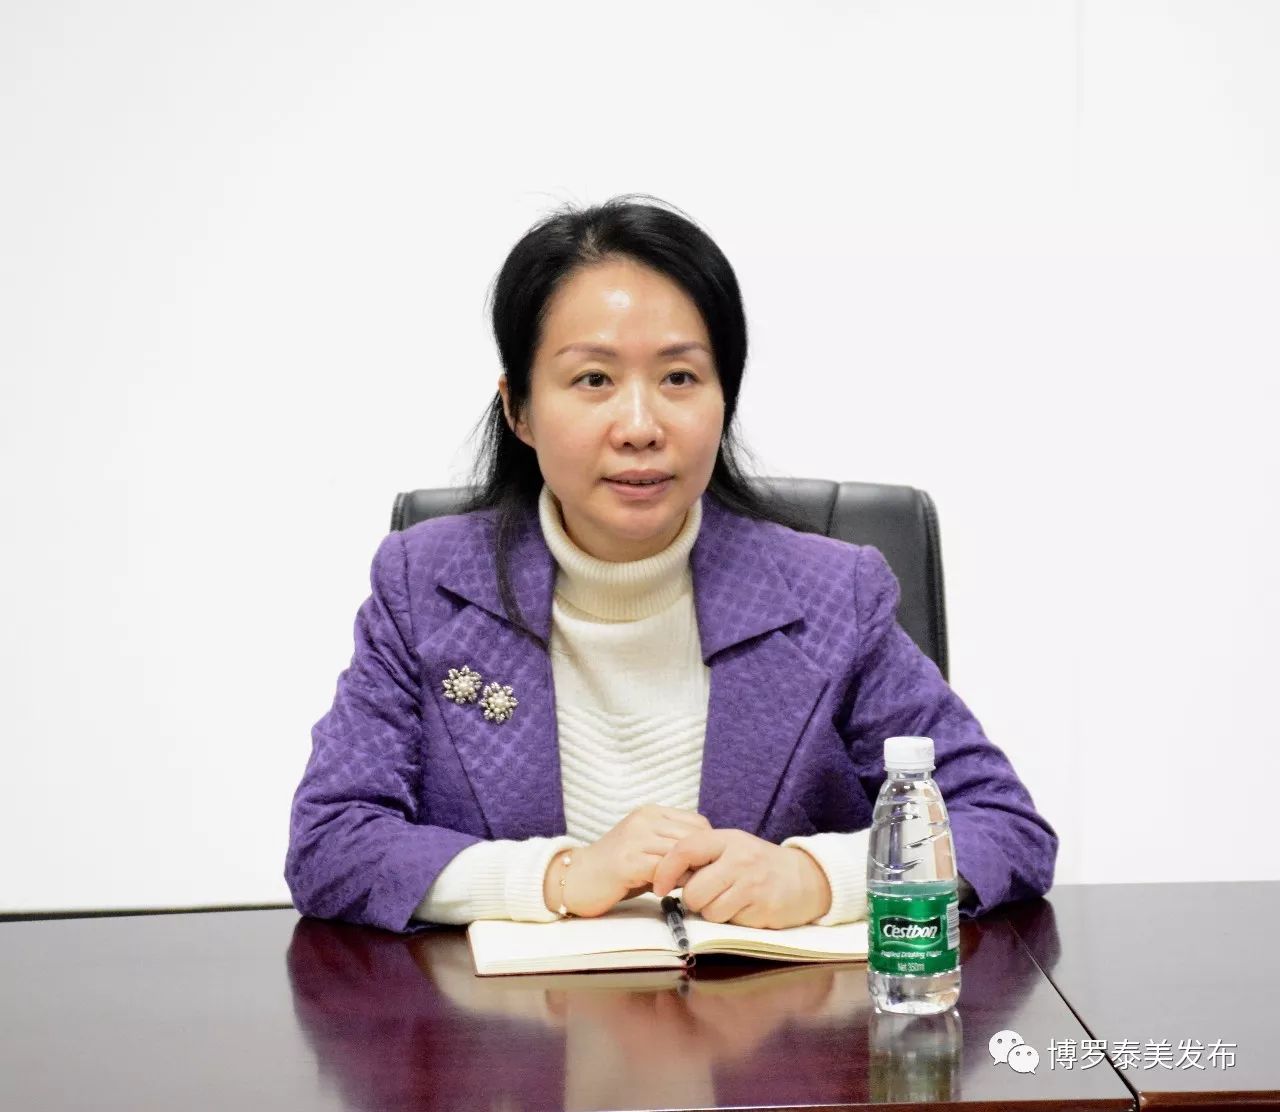 廖巍对新谱(惠州)电子有限公司的发展给予充分肯定,她鼓励企业要坚定